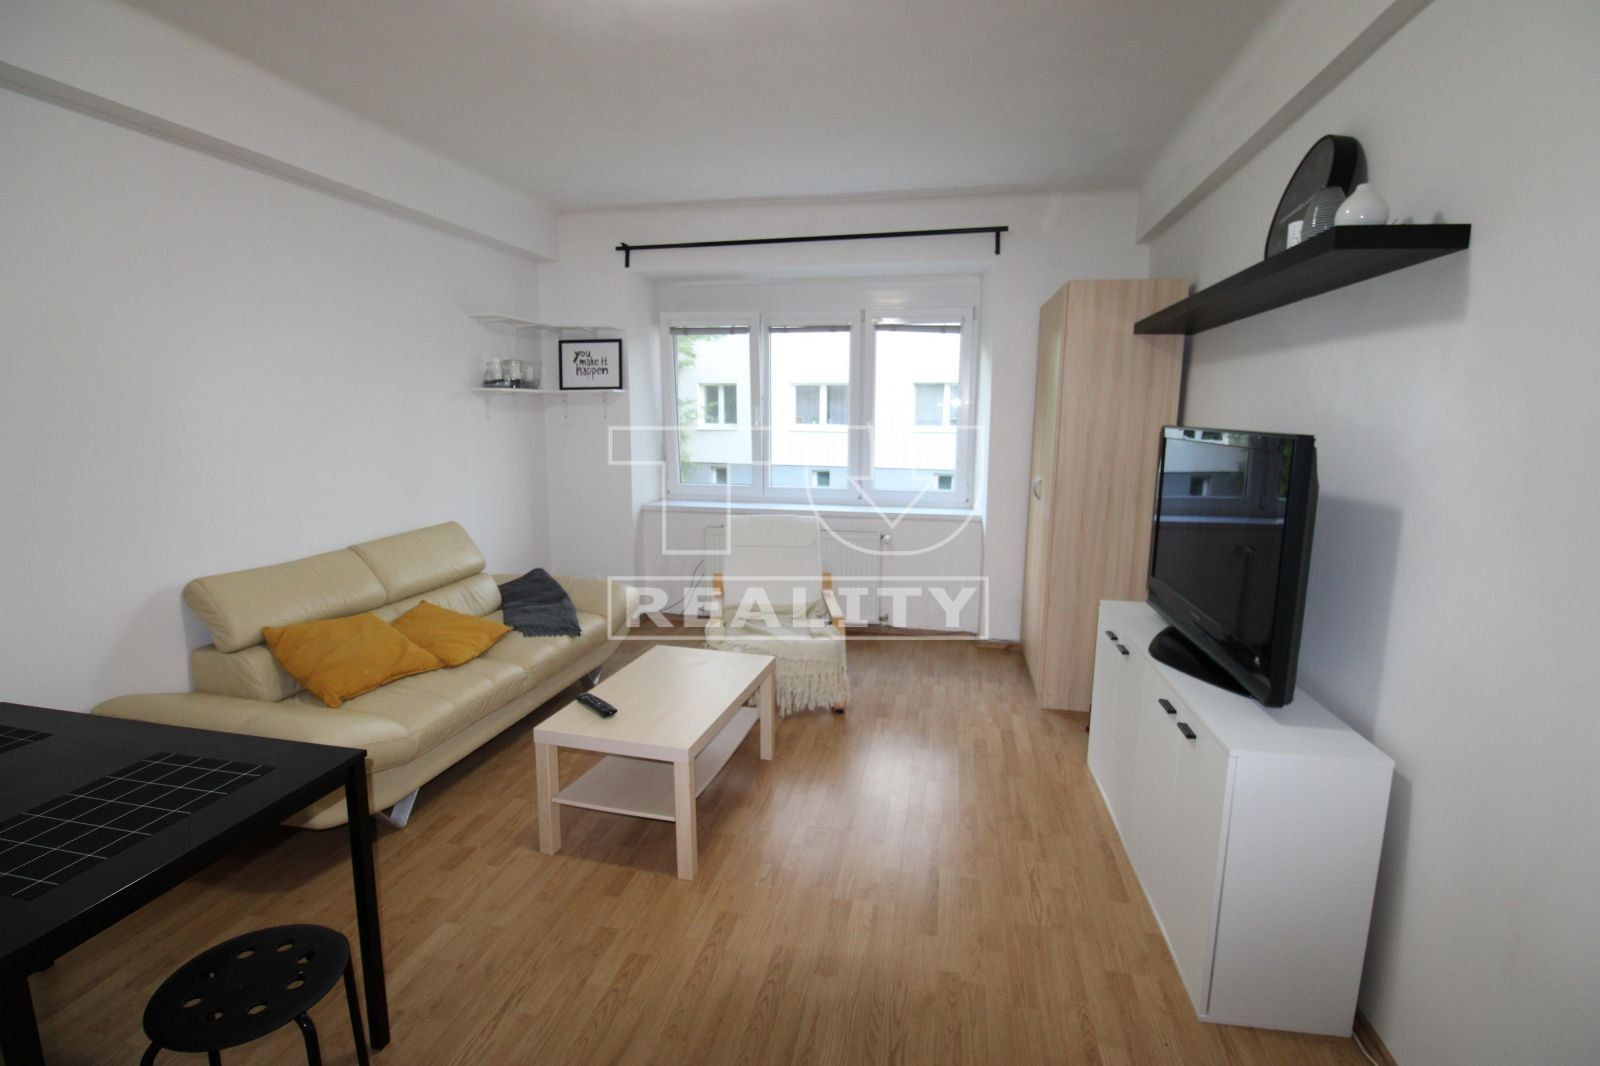 TUreality ponúka na predaj 2i byt - Bratislava-Ružinov - 46 m²